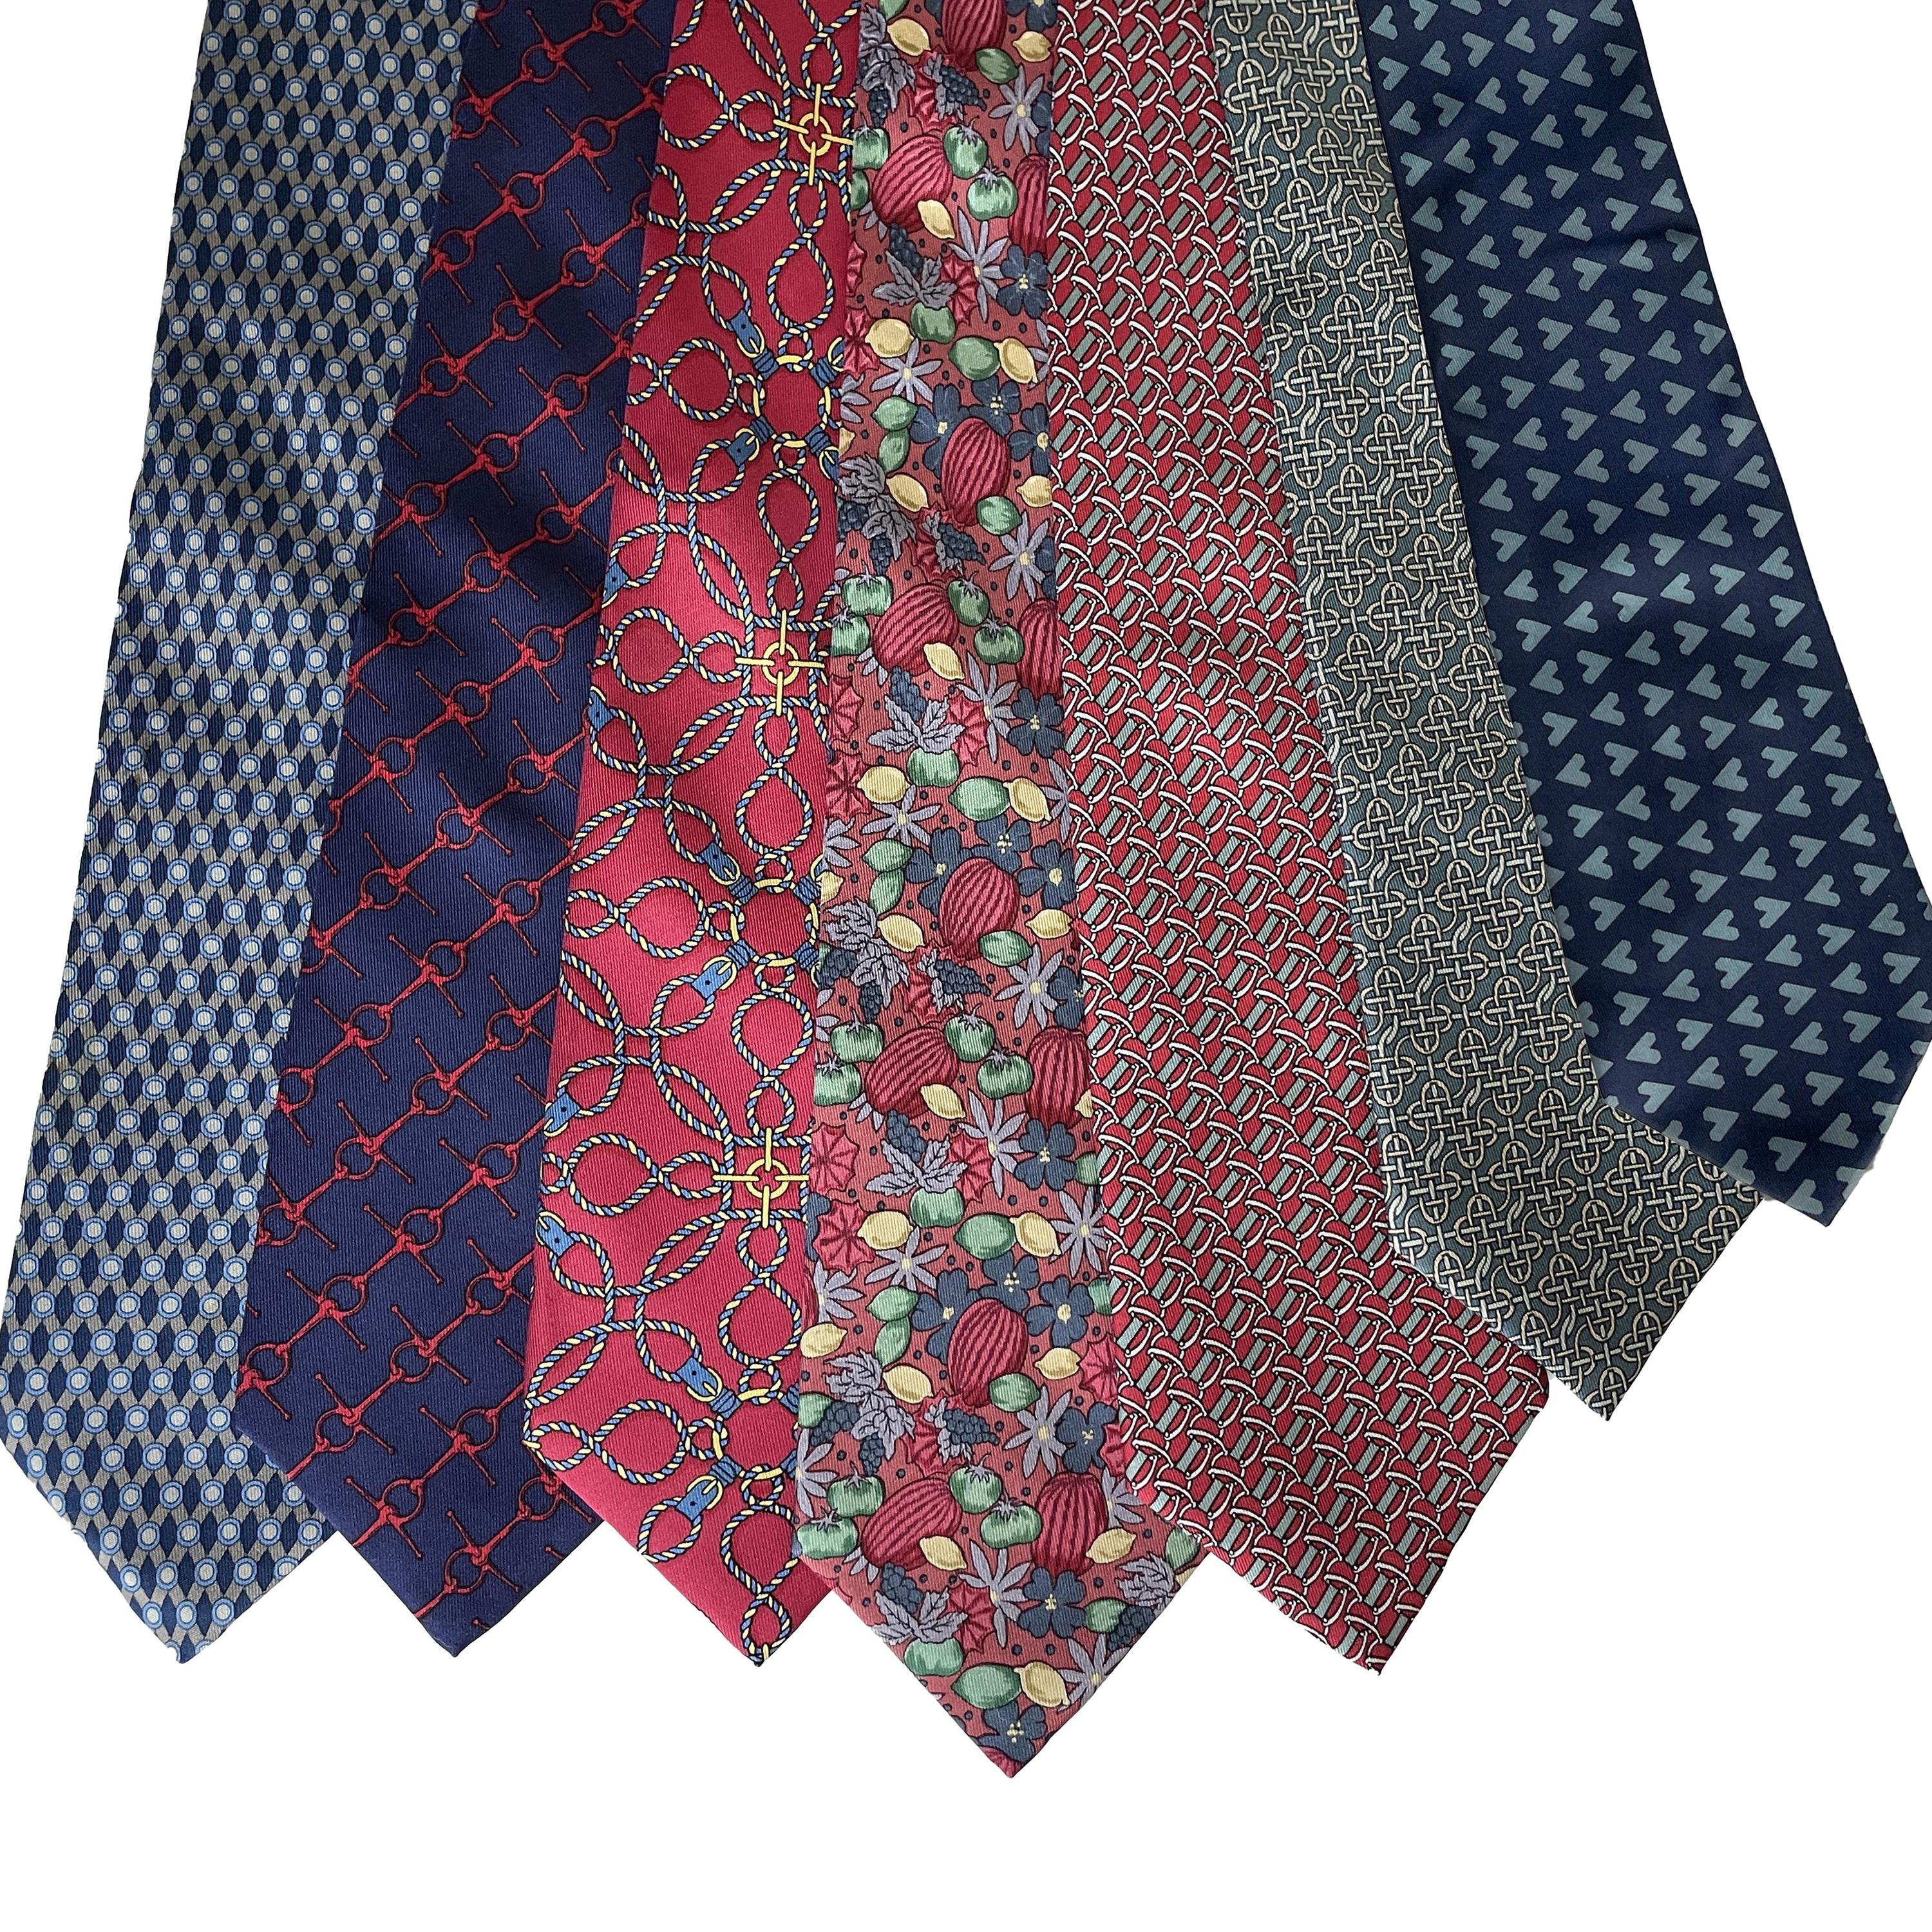 Hermes Necktie Lot of 34 Ties Mens Luxury Silk Rare Vintage Patterns 1